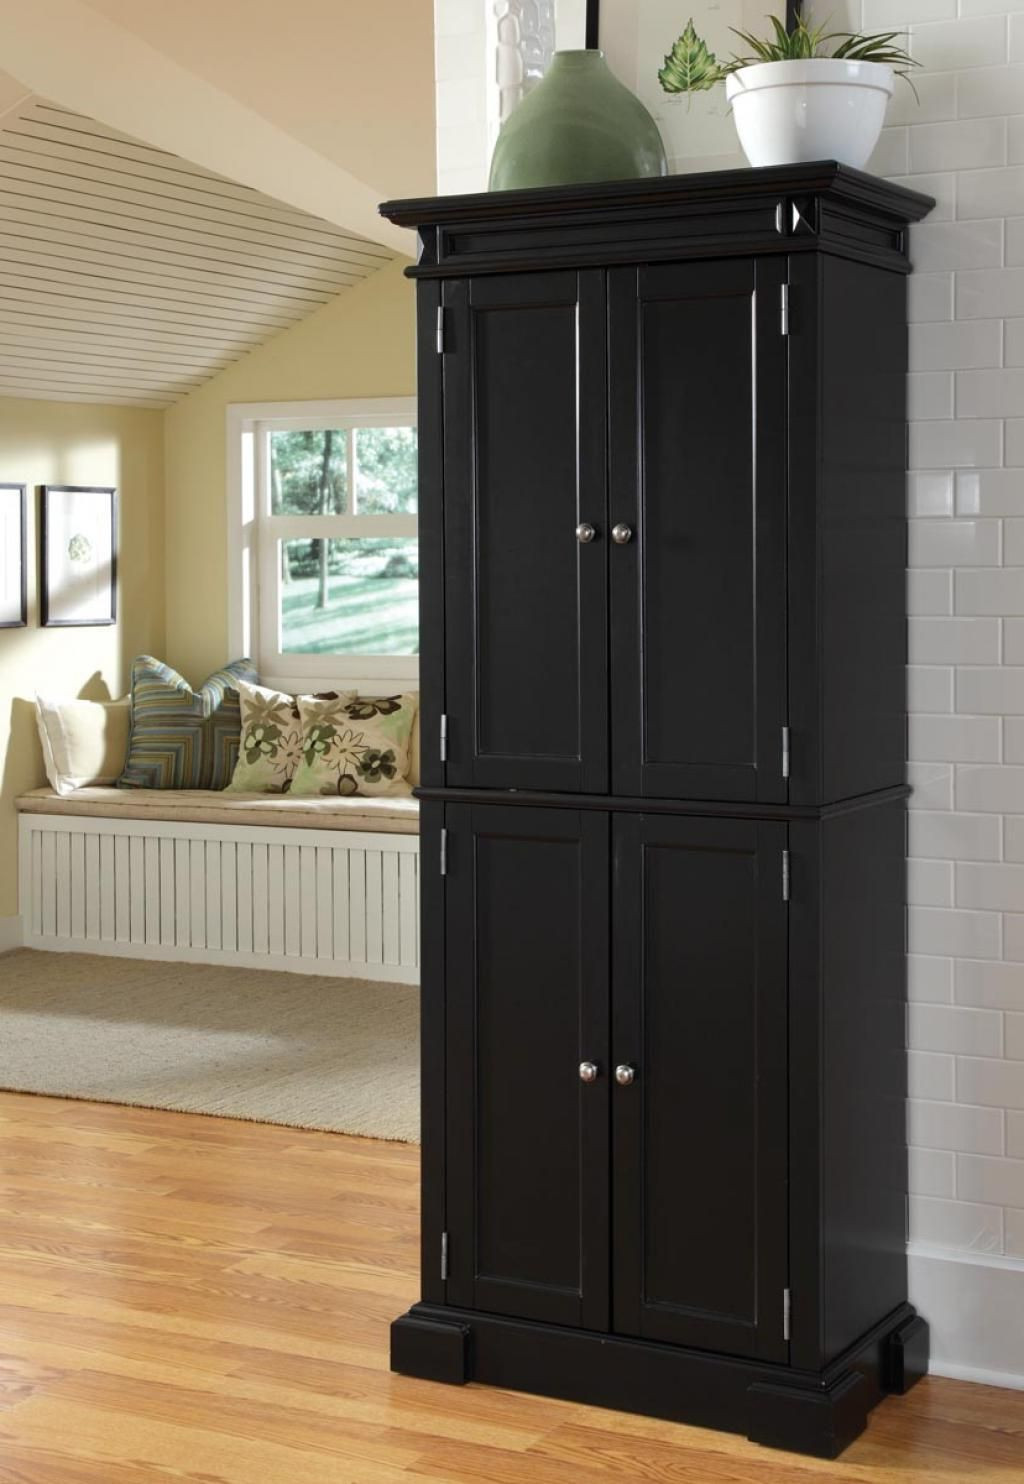 Small Storage Cabinet For Kitchen
 kitchen pantry cabinet ideas baytownkitchen storage with